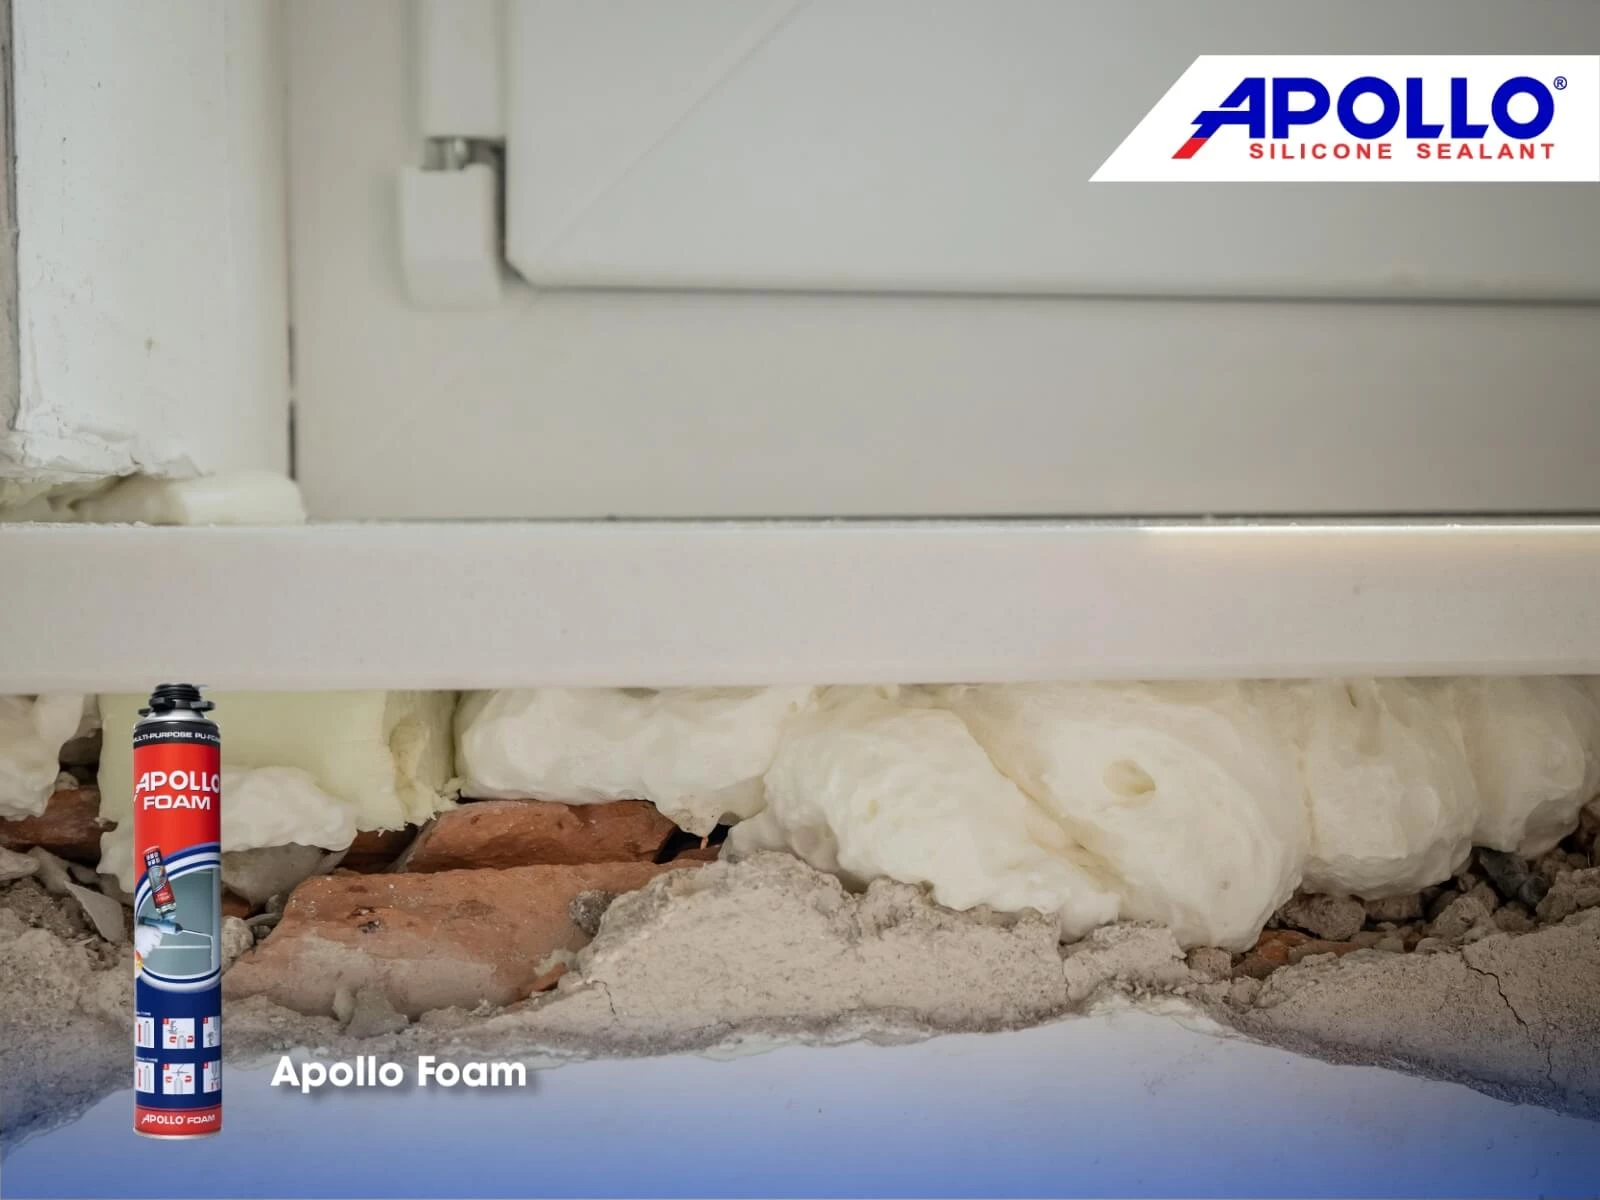 Tuân theo hướng dẫn để sử dụng Apollo PU Foam đúng cách để đảm bảo an toàn, hiệu quả